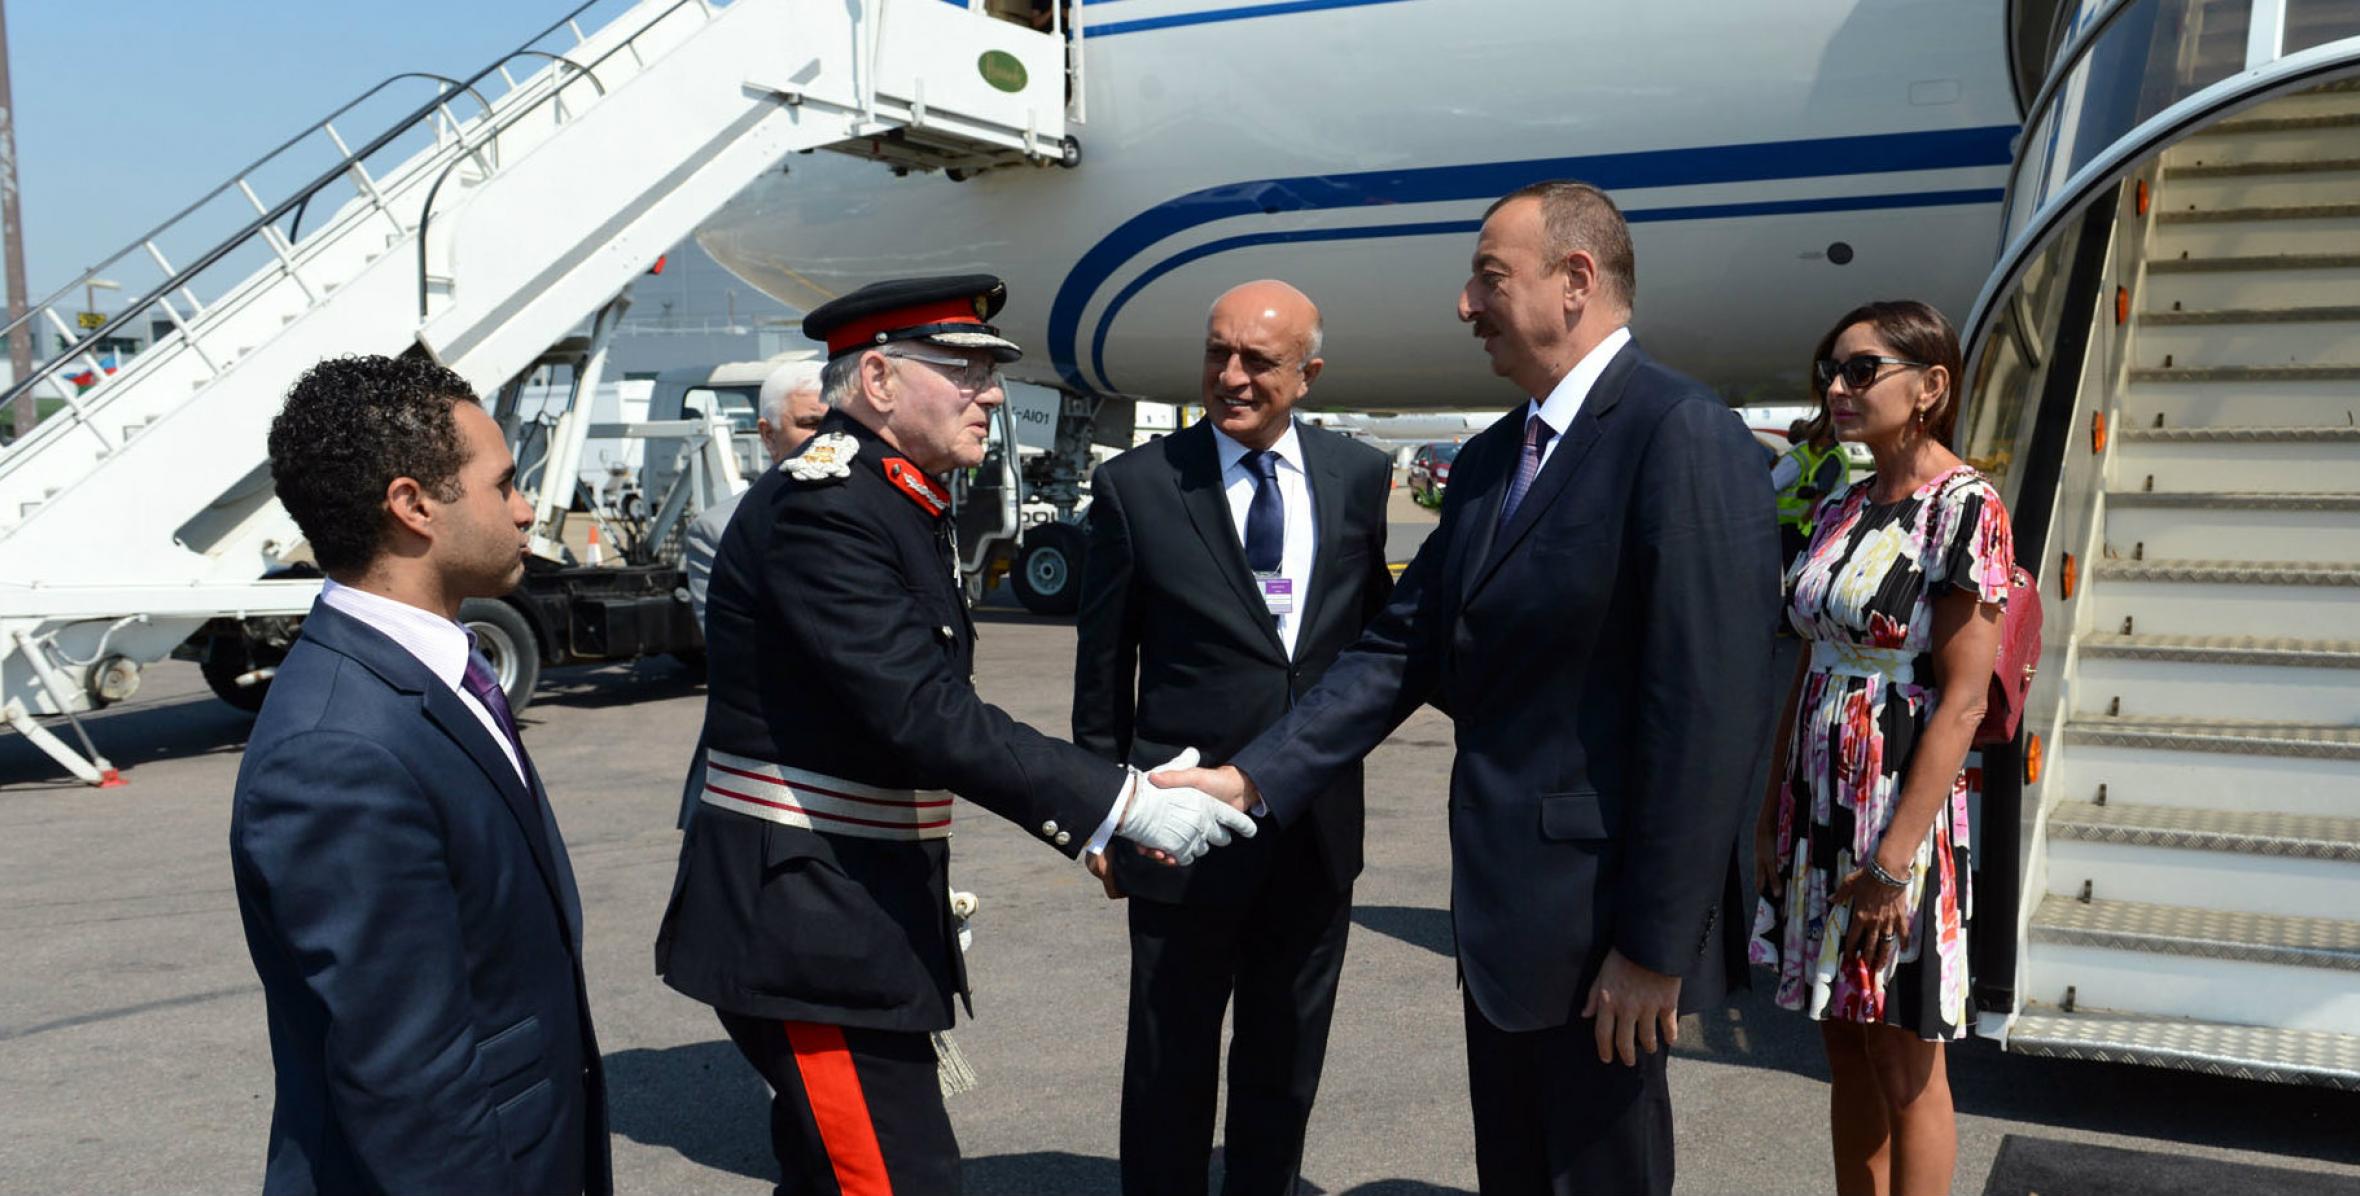 Ильхам Алиев прибыл в город Лондон, где состоятся ХХХ летние Олимпийские игры